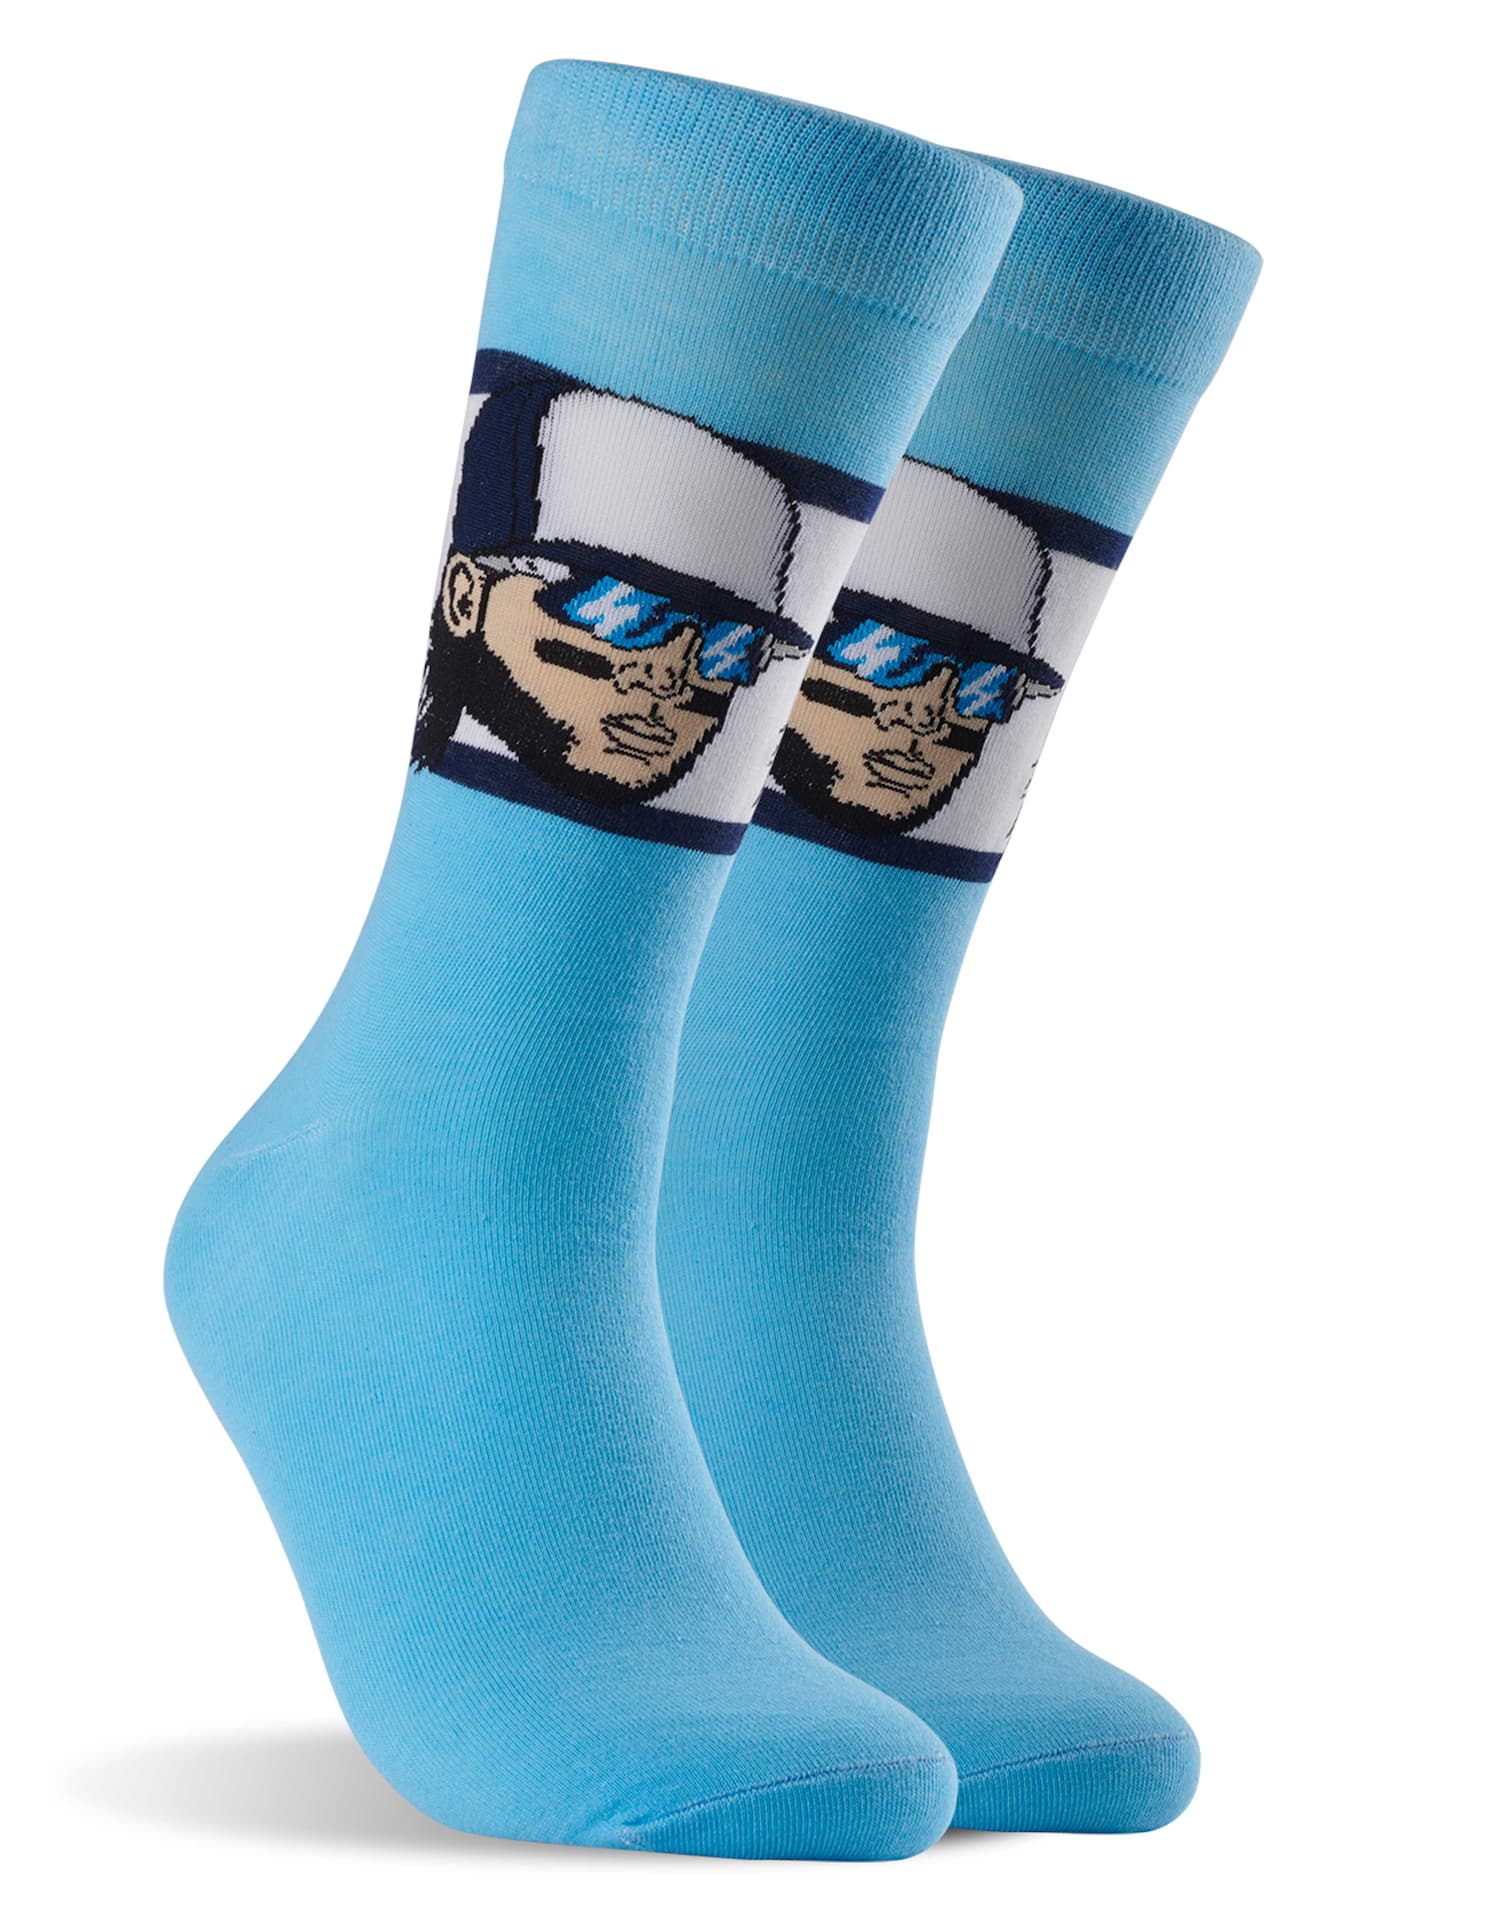 Bo Bichette  Blue jays baseball, Soccer socks, Blue jays